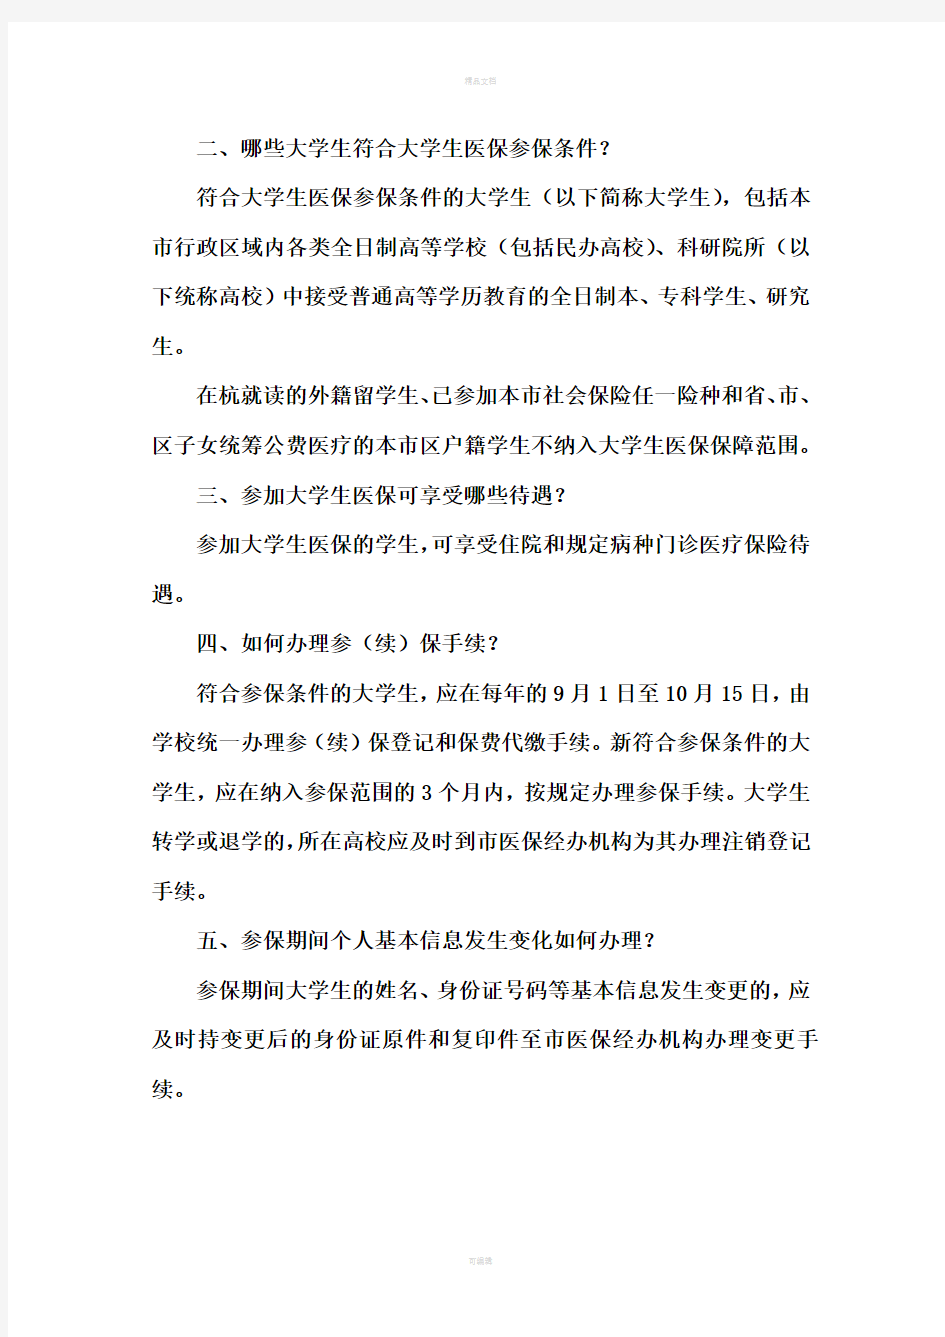 杭州市城镇居民基本医疗保险宣传资料(大学生分册)